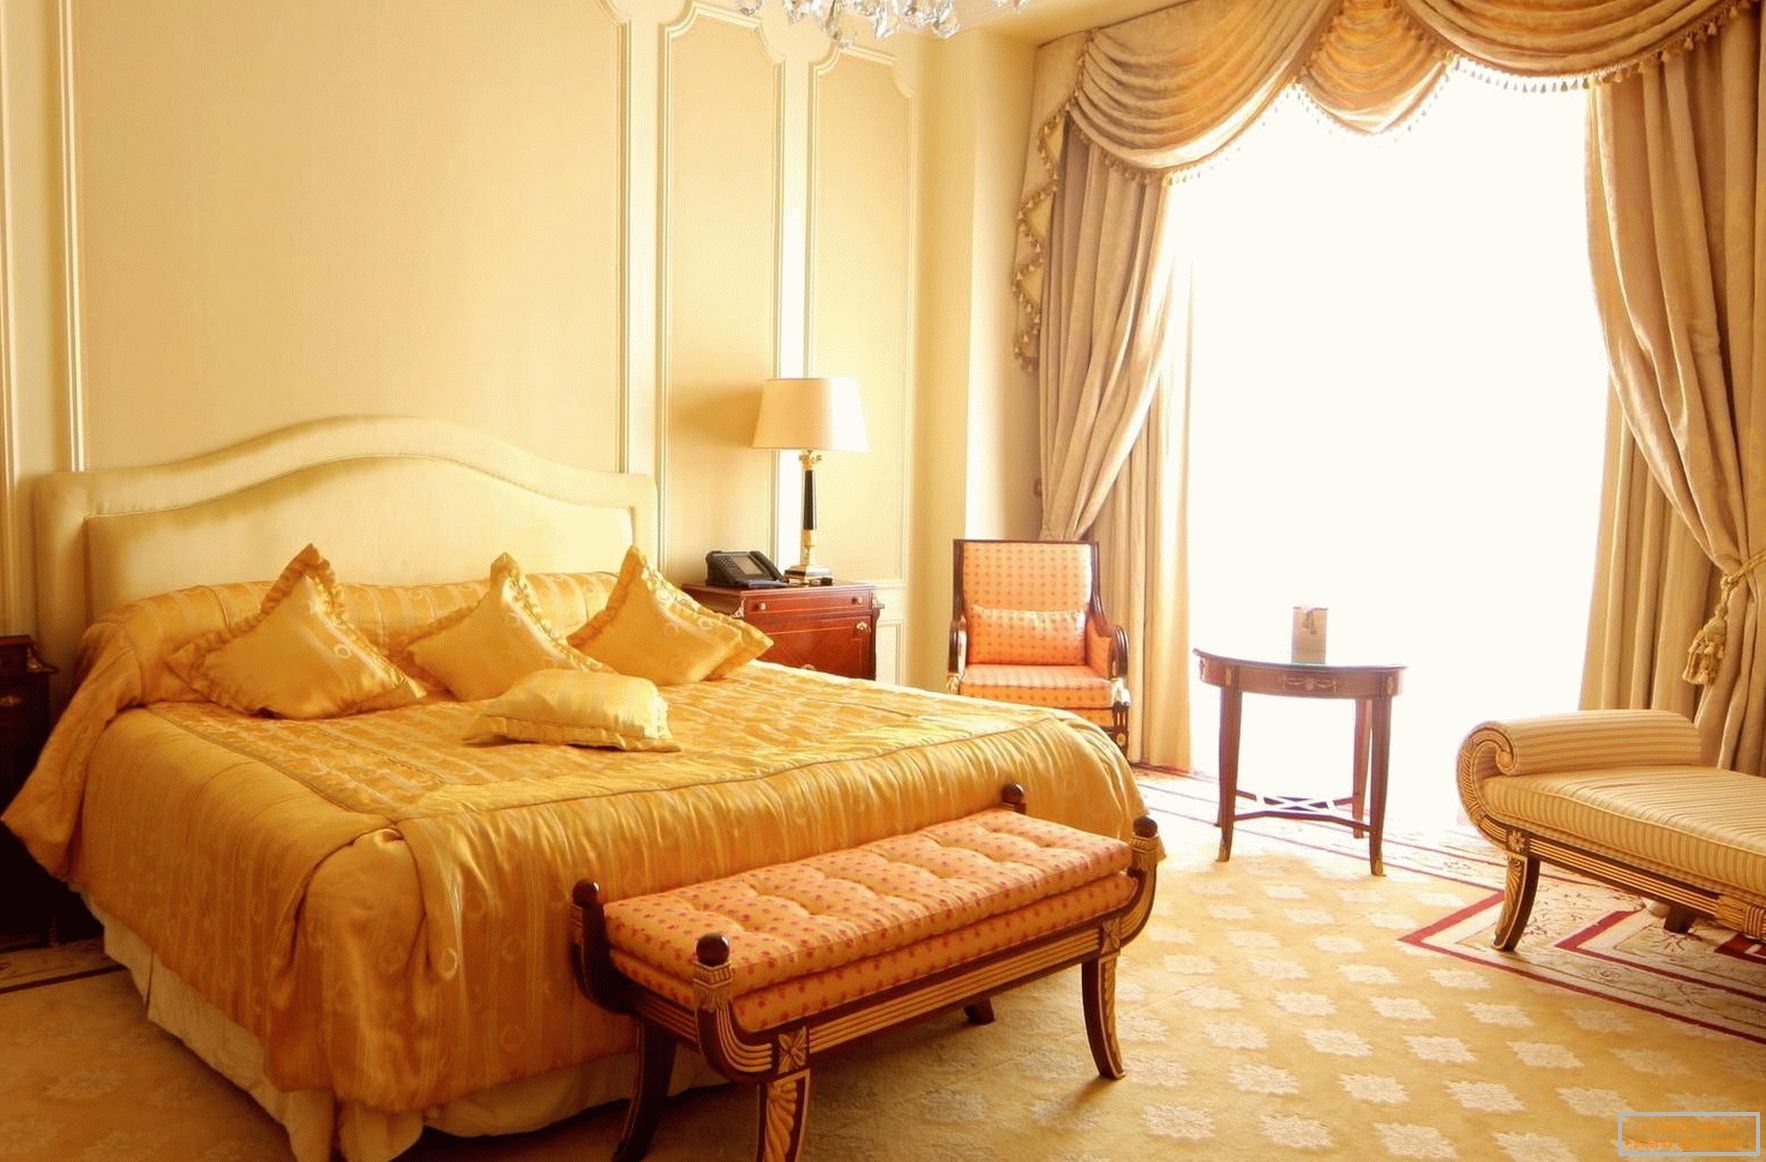 Светла, пространа барокна спаваћа соба са панорамским прозорима. 